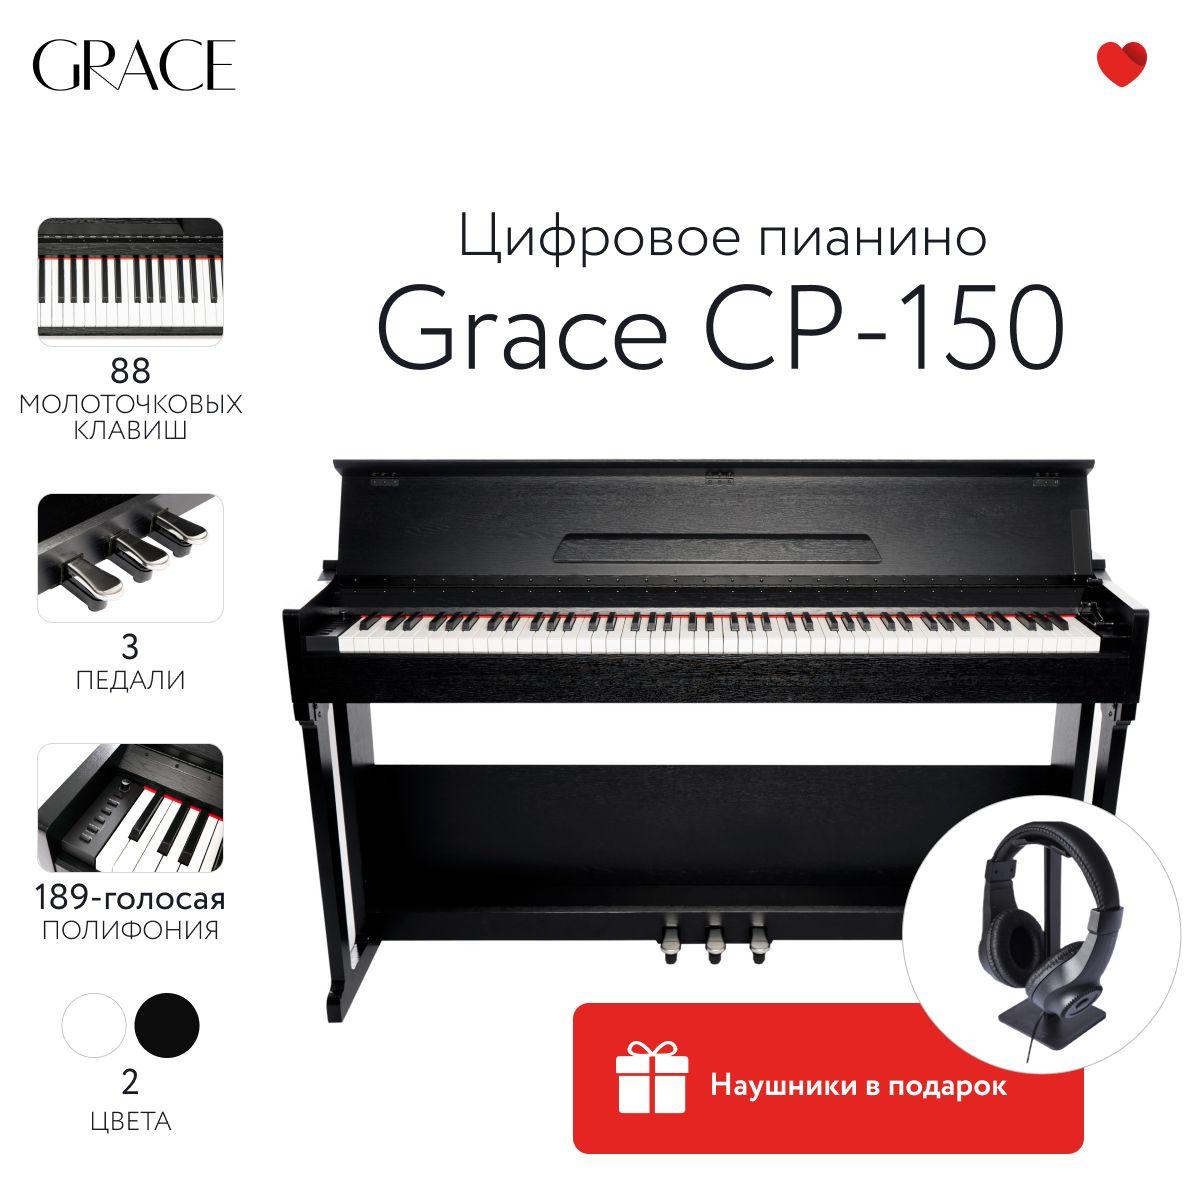 Grace | Grace CP-150 BK - Цифровое пианино в корпусе с тремя педалями